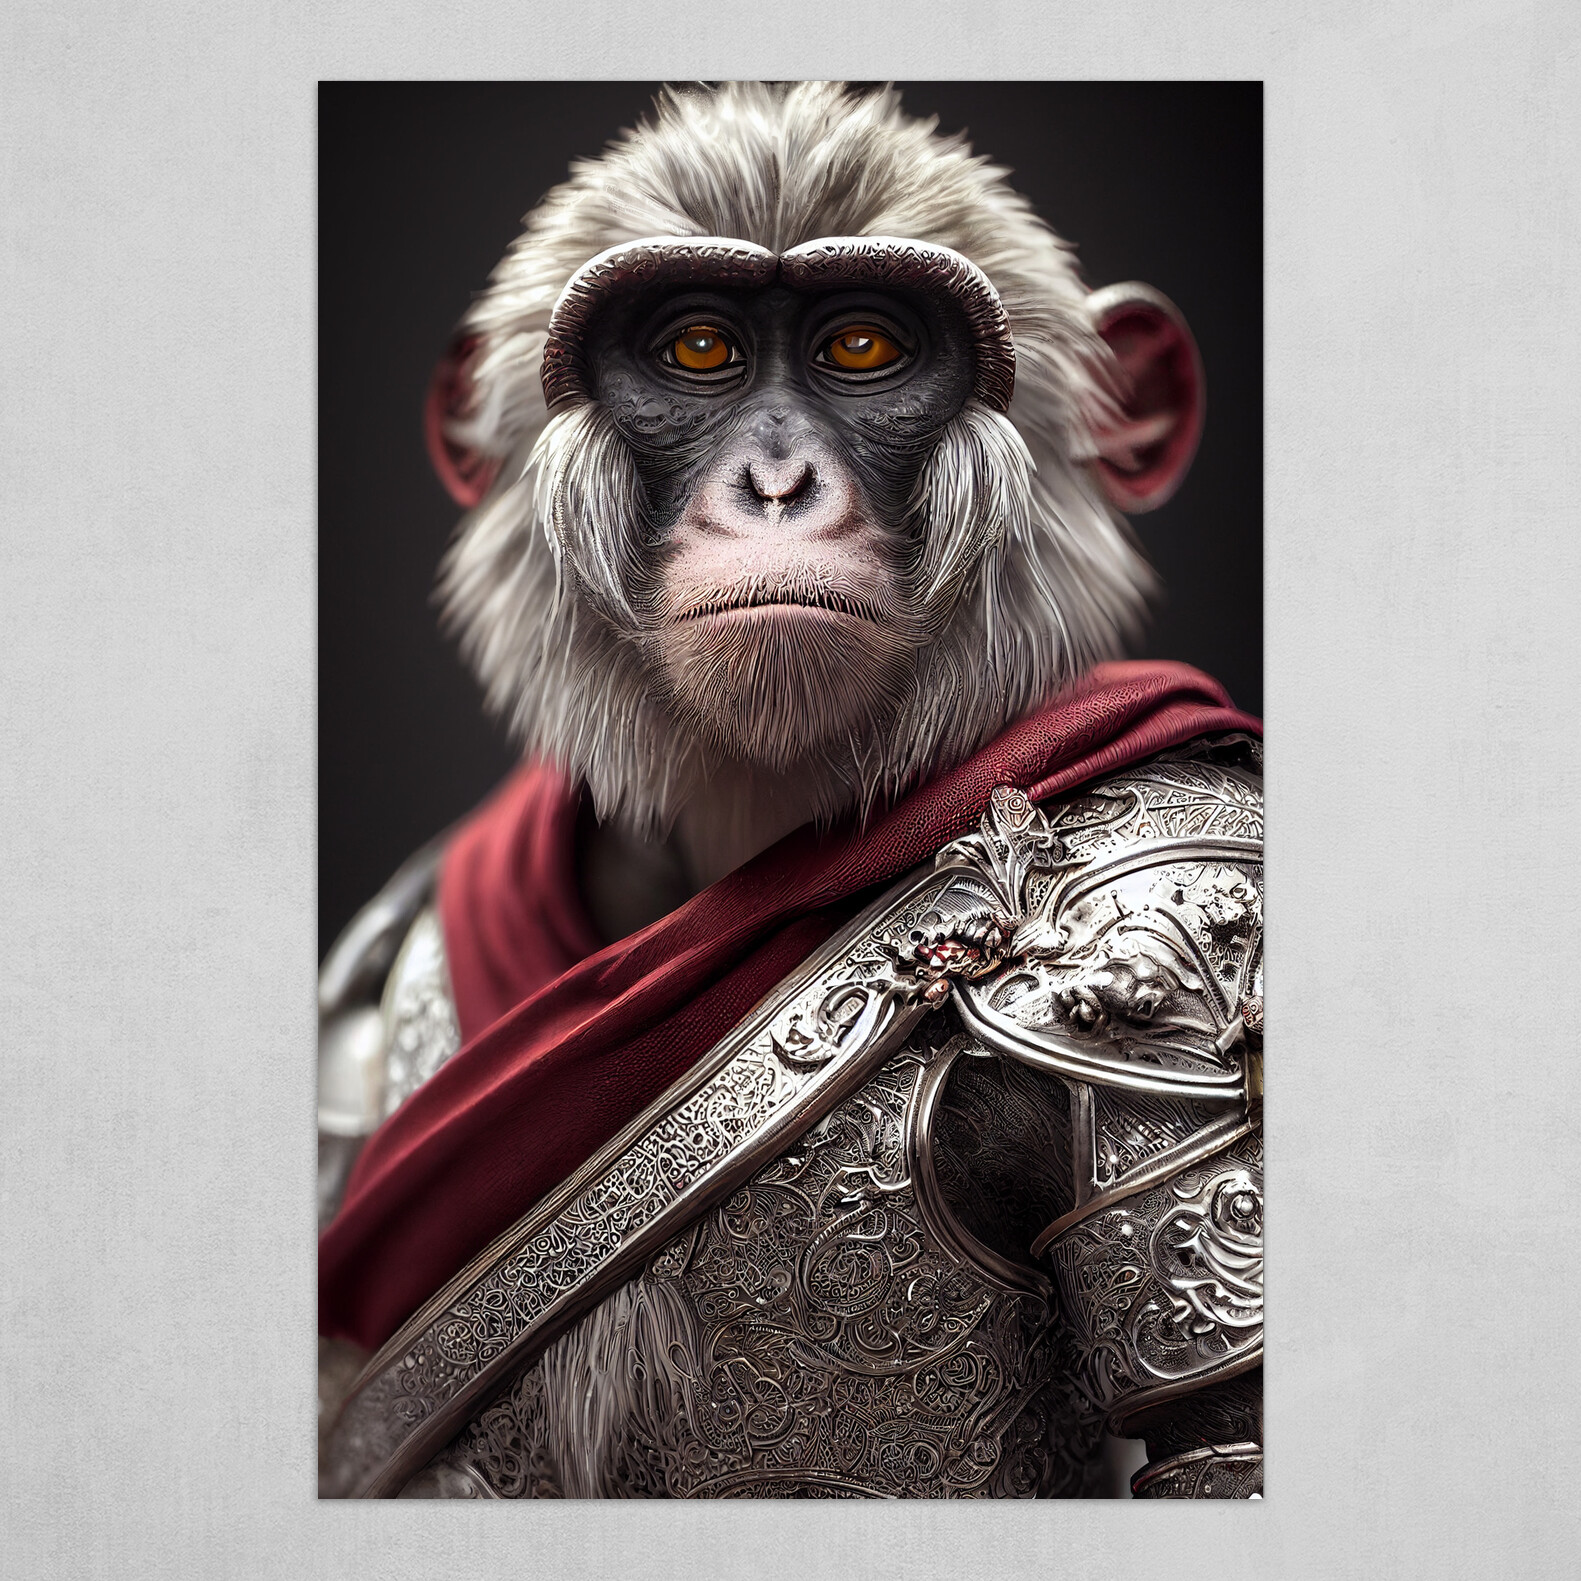 Warrior Monkey